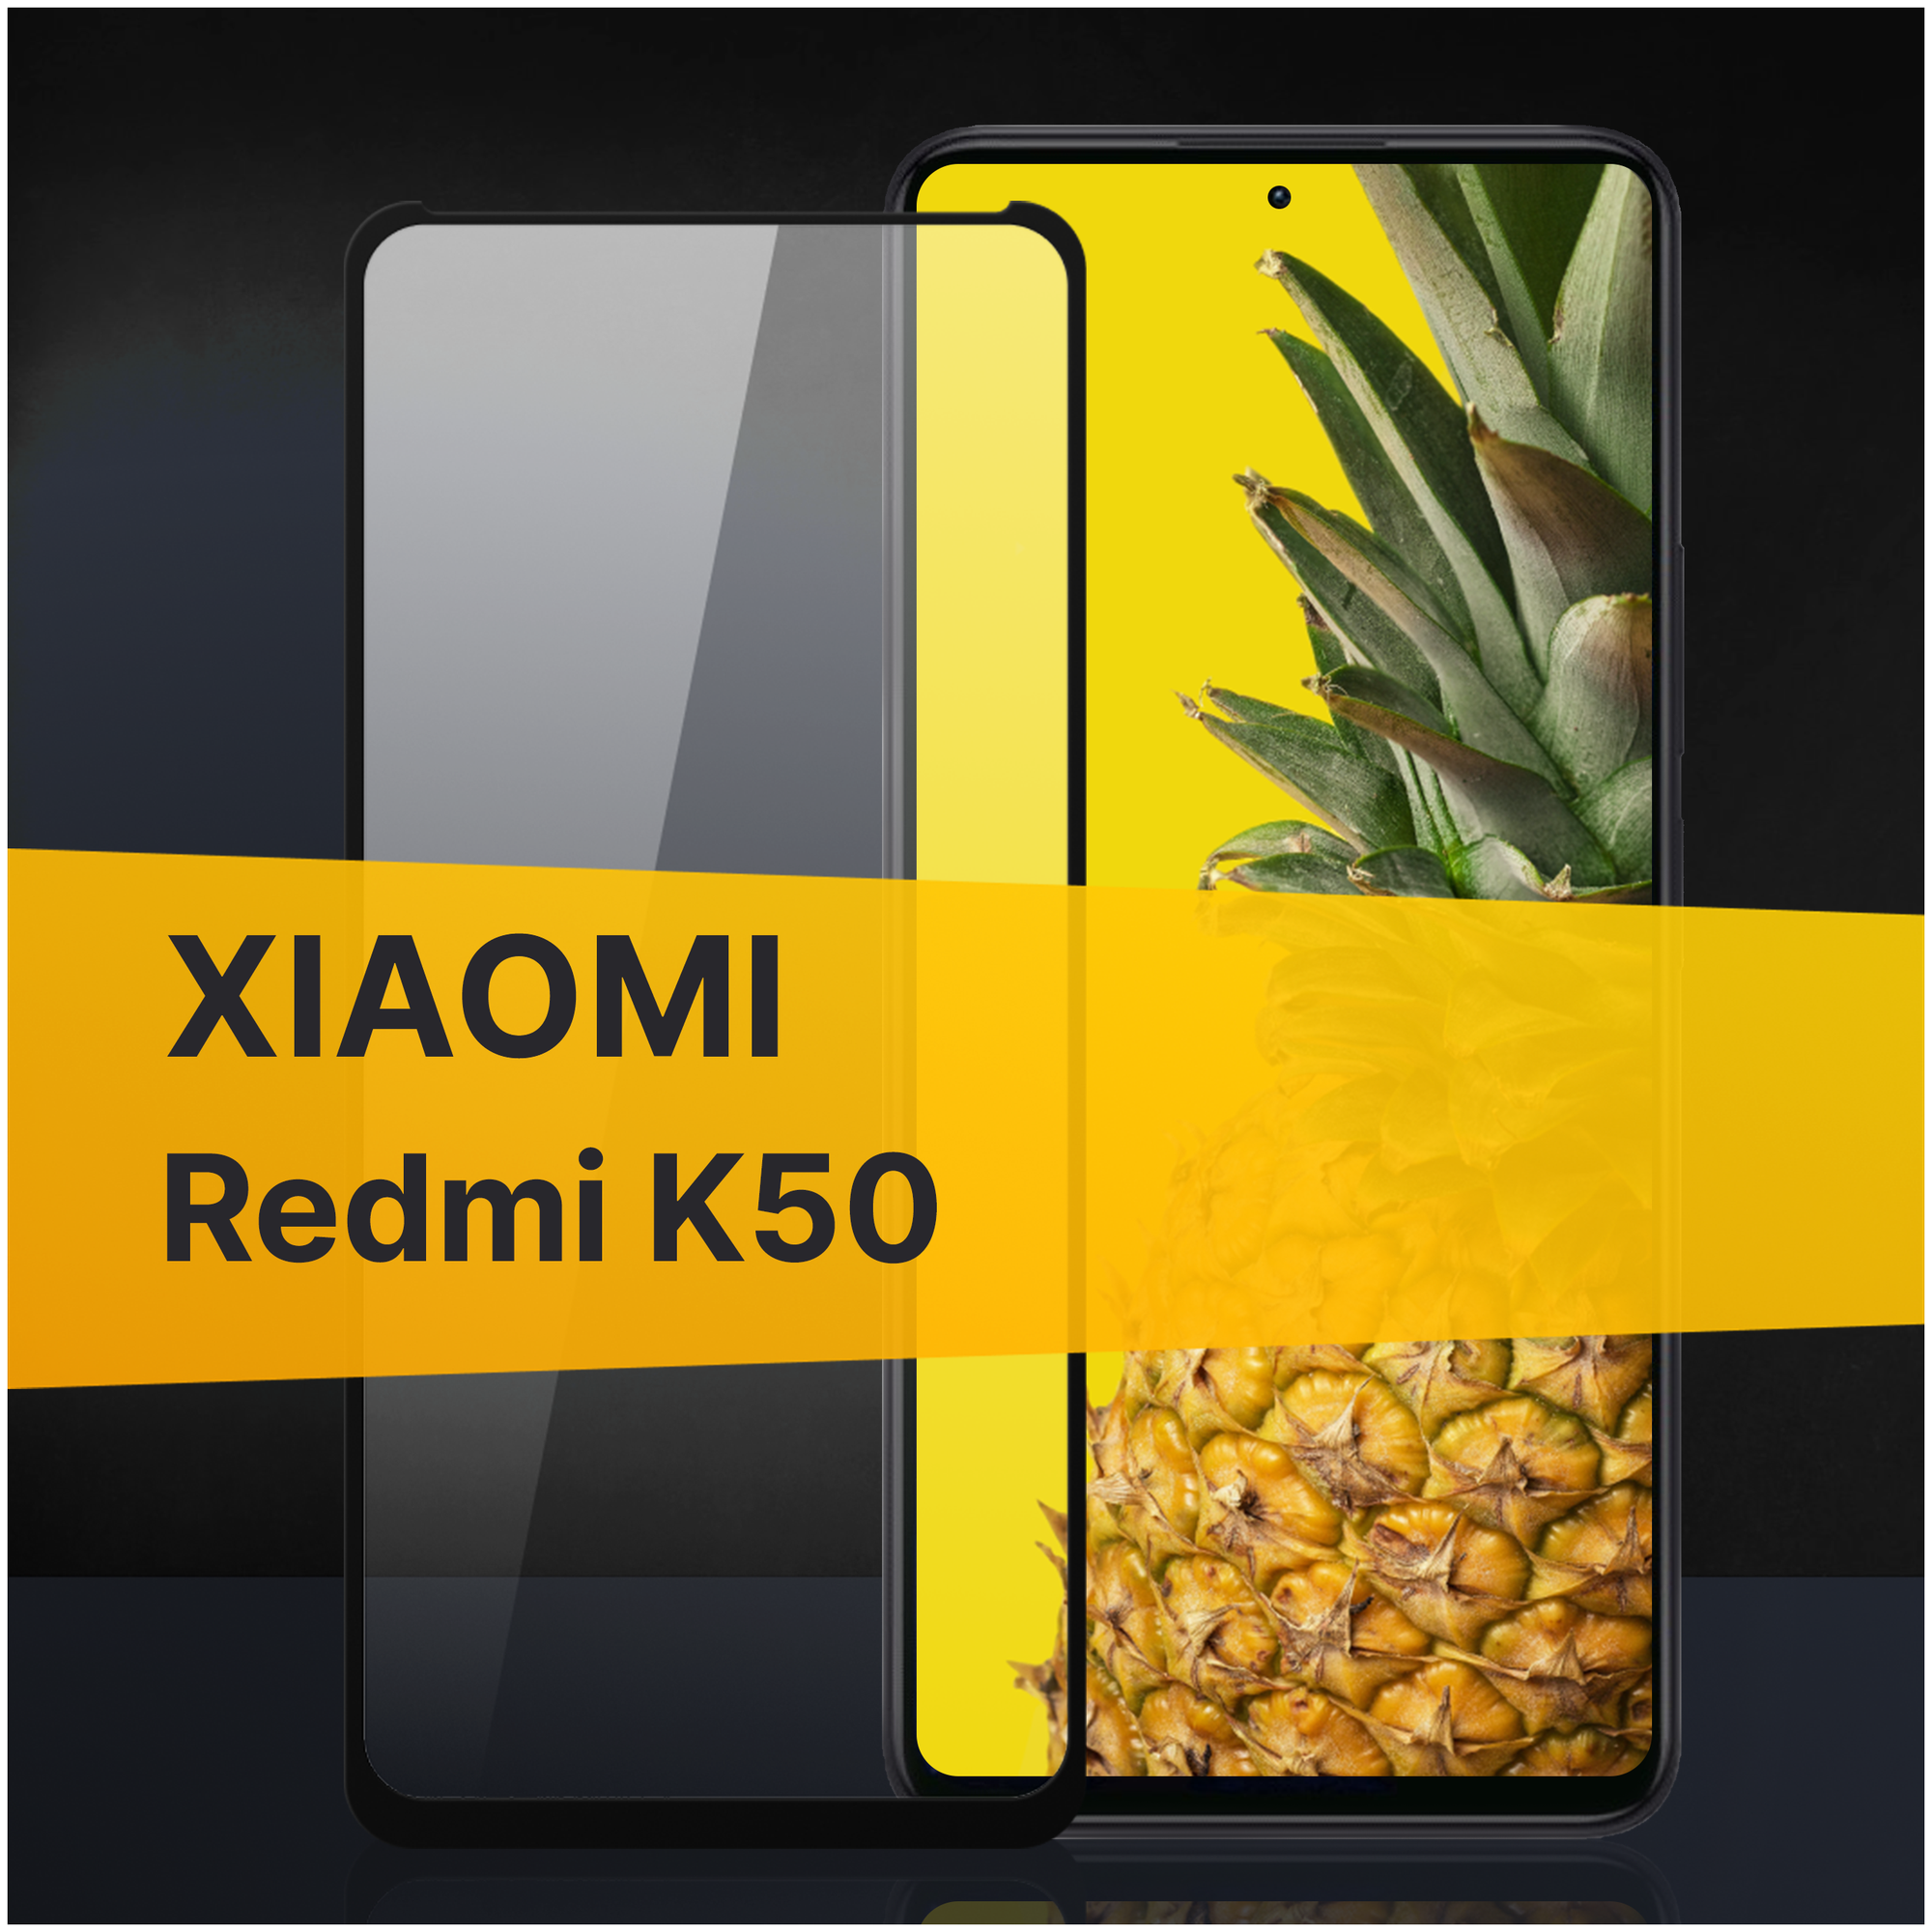 Противоударное защитное стекло для телефона Xiaomi Redmi K50 / Полноклеевое 3D стекло с олеофобным покрытием на смартфон Сяоми Редми К50 / С черной рамкой